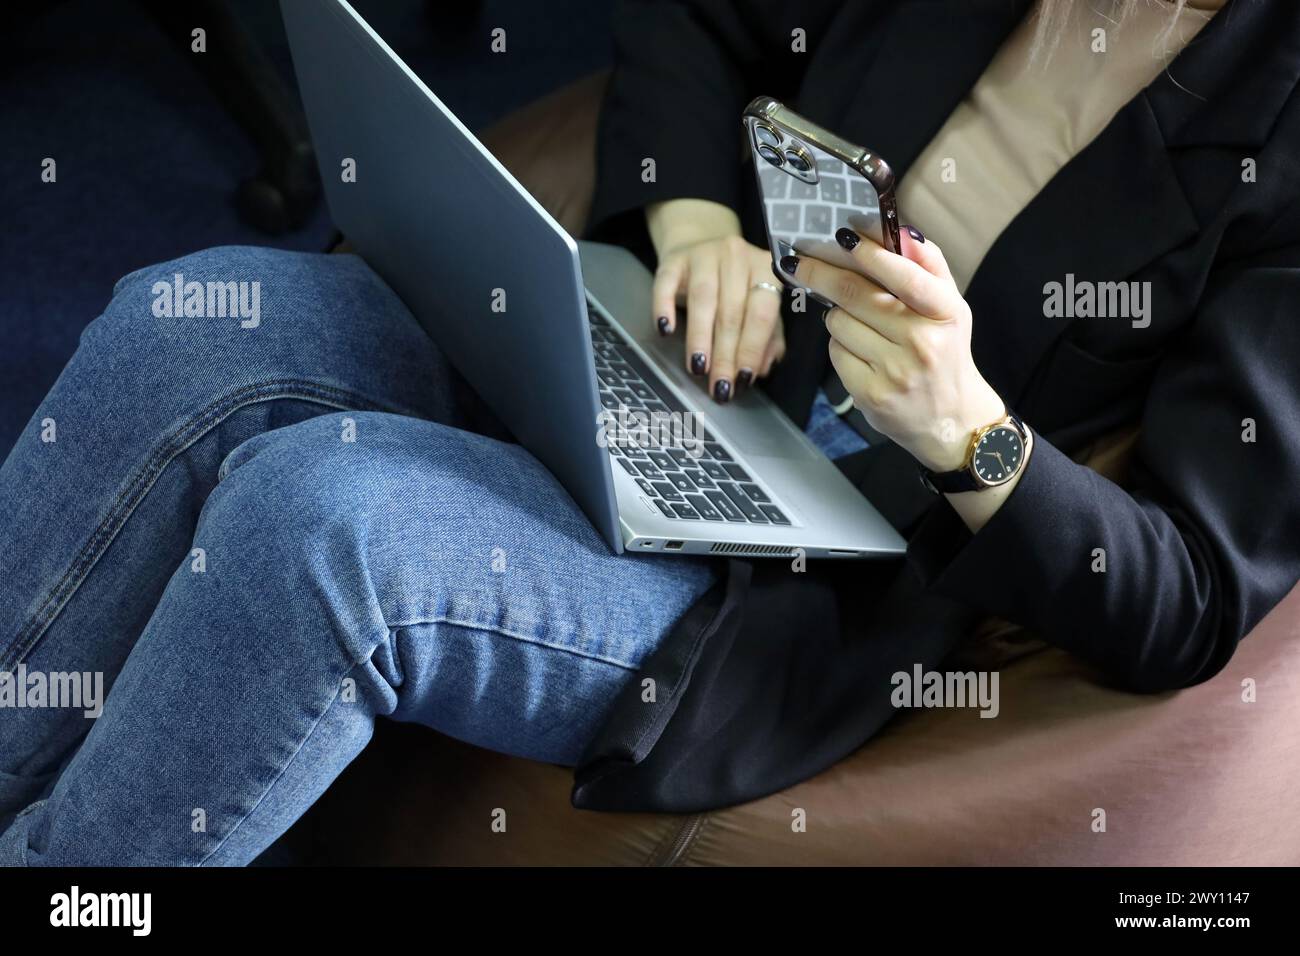 Ragazza in jeans seduta su sgabello imbottito con laptop in ginocchio e smartphone. Lavorare comodamente in ufficio Foto Stock